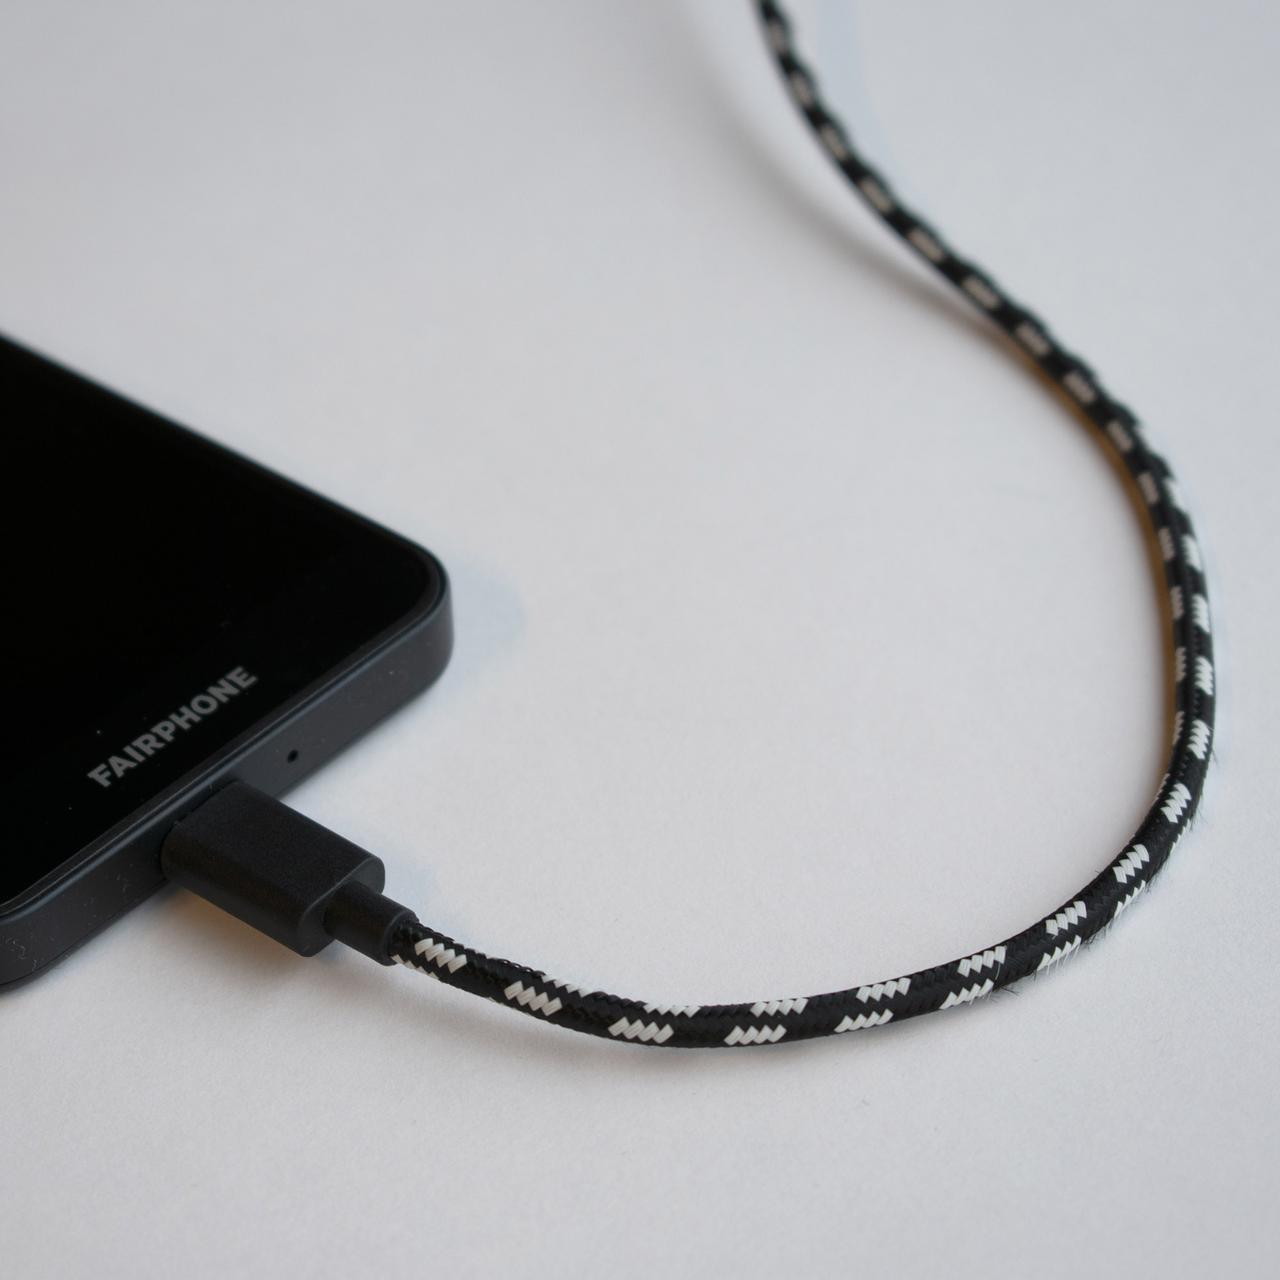 Fairphone 3 Ladekabel Ladegerät USB-Kabel fair